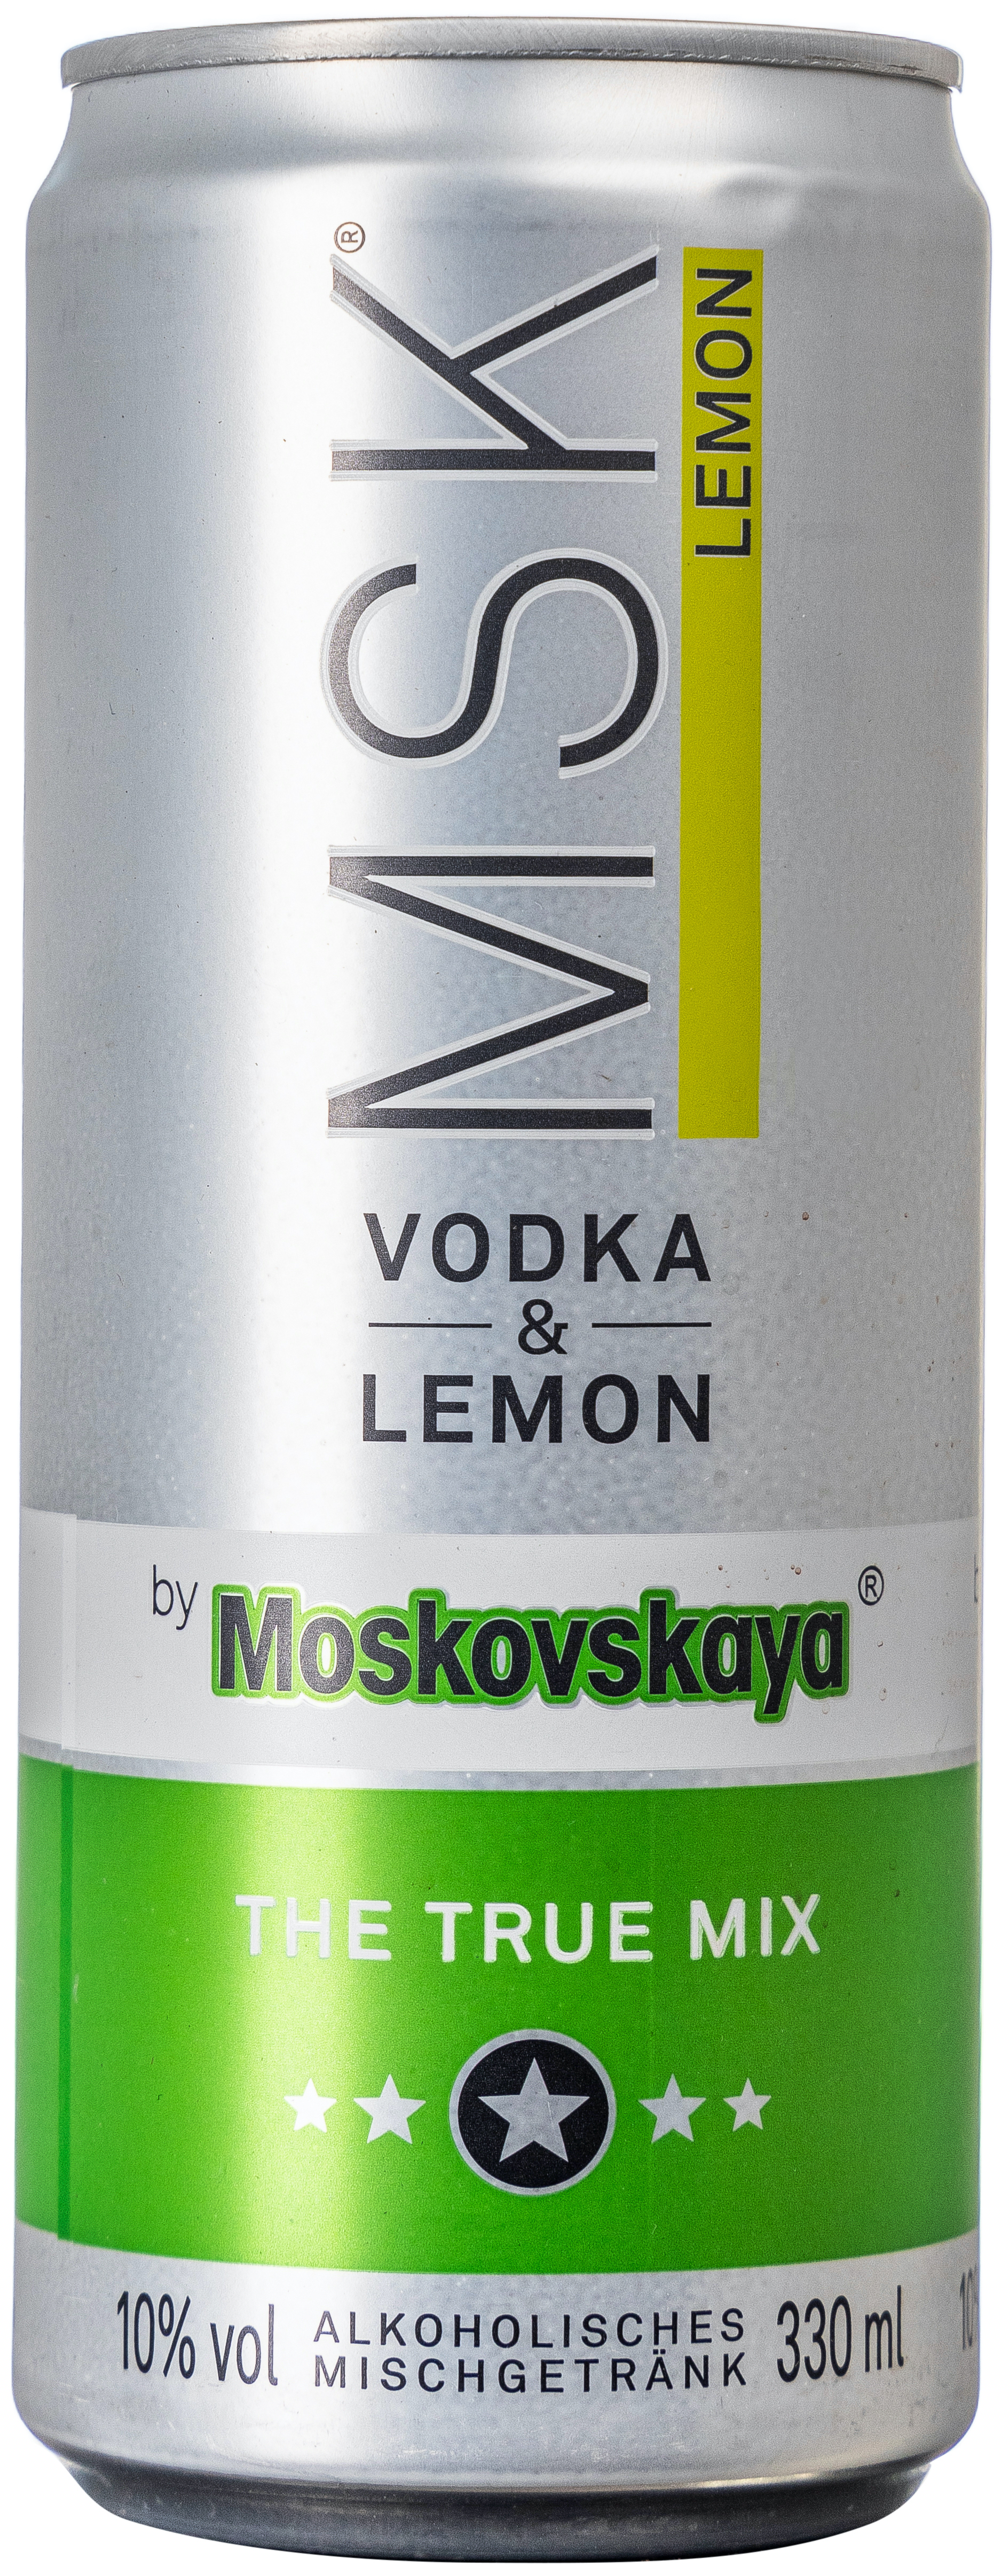 Moskovskaya Vodka & Lemon 10 % vol. 0,33L EINWEG 